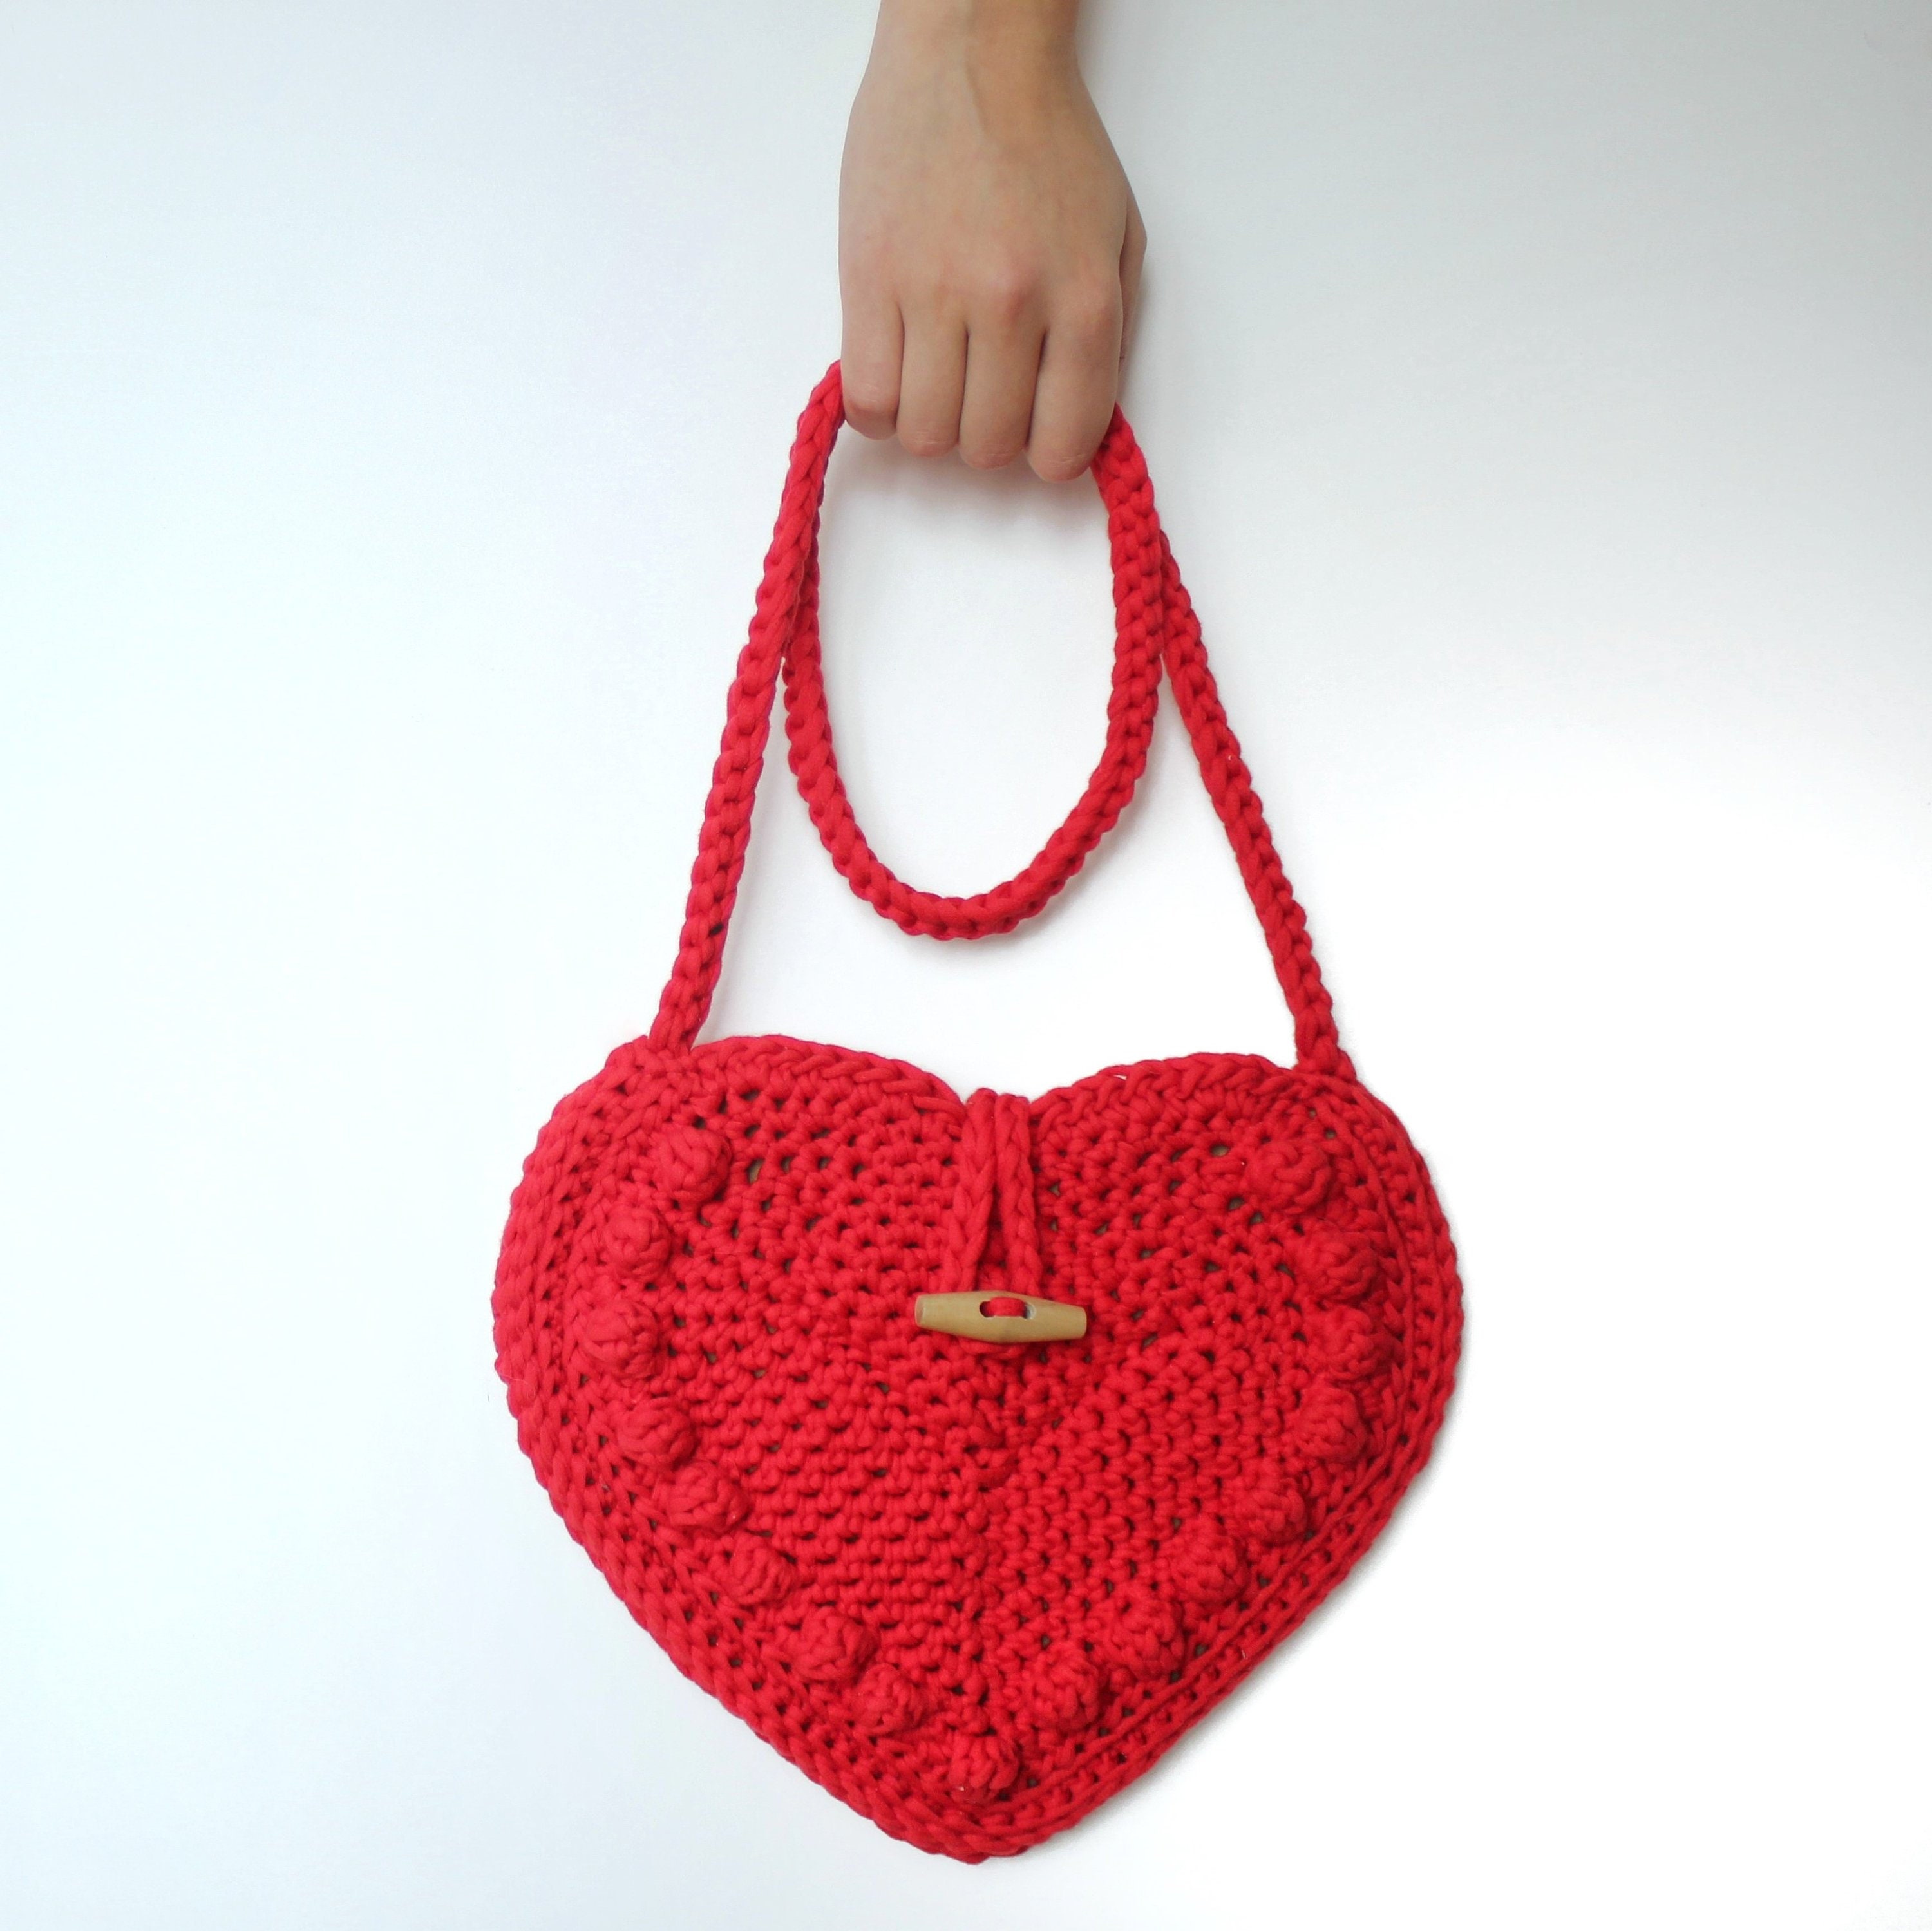 Red Heart Crochet Mixed Bag Pattern